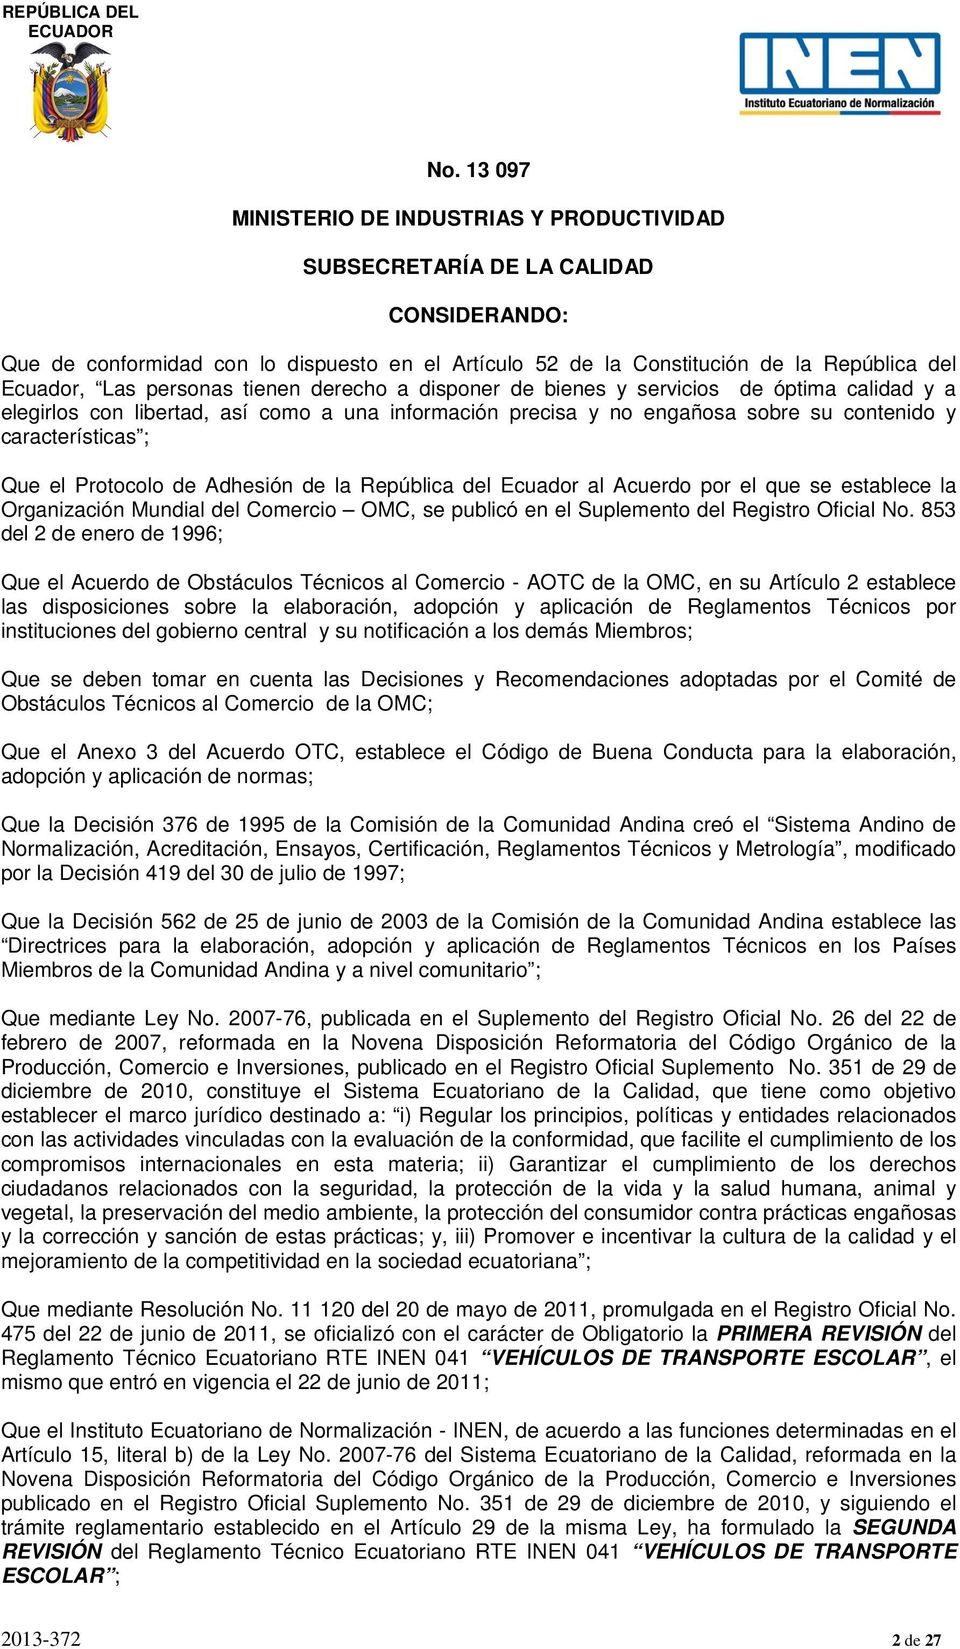 Protocolo de Adhesión de la República del Ecuador al Acuerdo por el que se establece la Organización Mundial del Comercio OMC, se publicó en el Suplemento del Registro Oficial No.